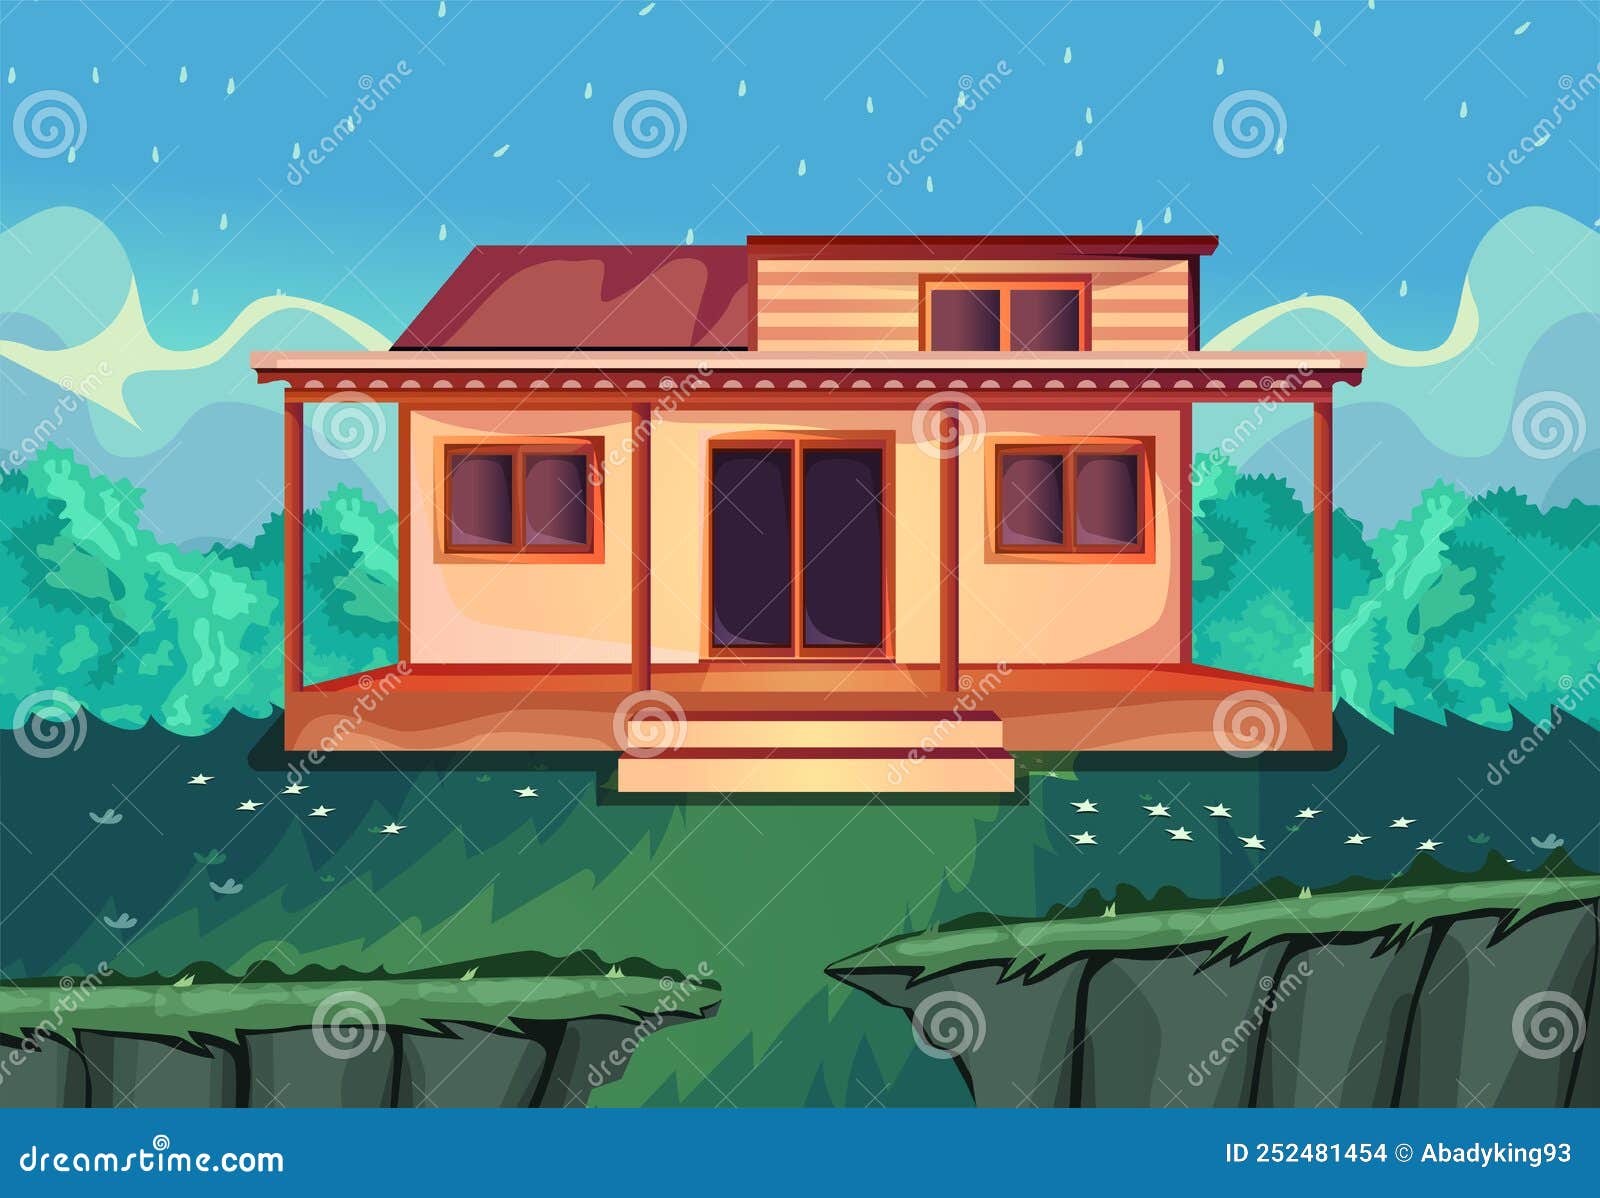 Fundo do jogo 2d, paisagem de uma pequena casa perto do lago